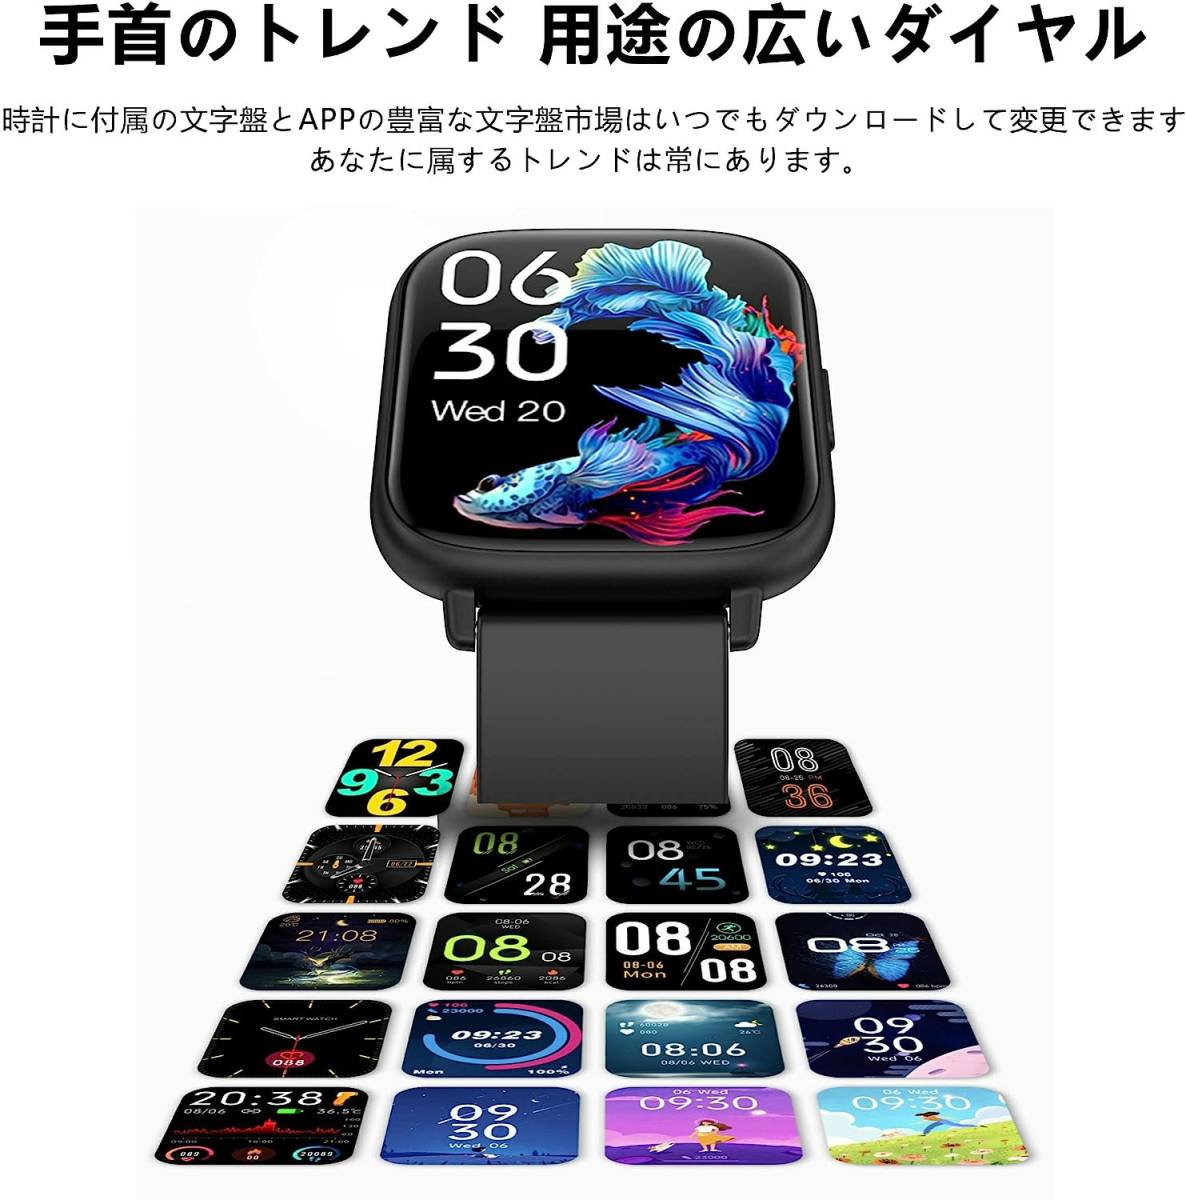 スマートウォッチ 多機能 1.85インチ大画面 iPhone/アンドロイド対応 着信通知 多言語自由設定 多機能設定 軽量 防水 日本語説明書付き 